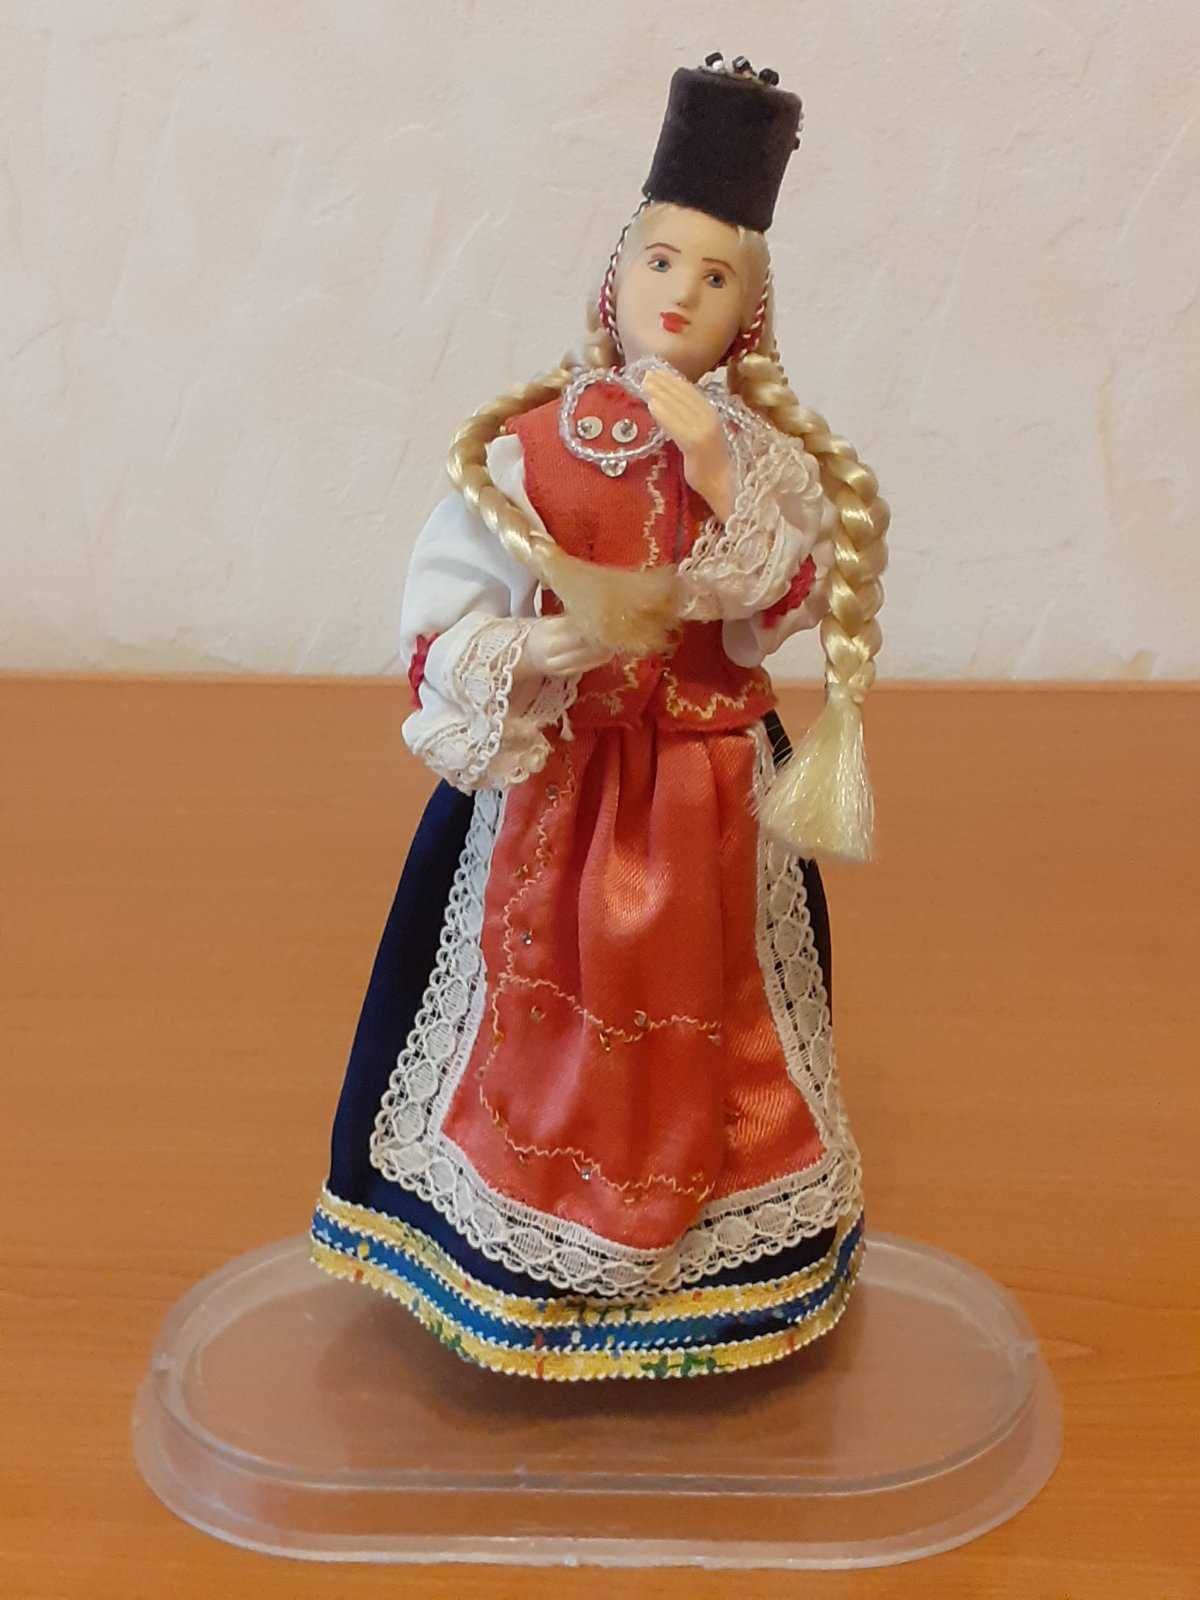 Винтажные сувенирные куклы в национальном костюме Румынии. Винтаж.